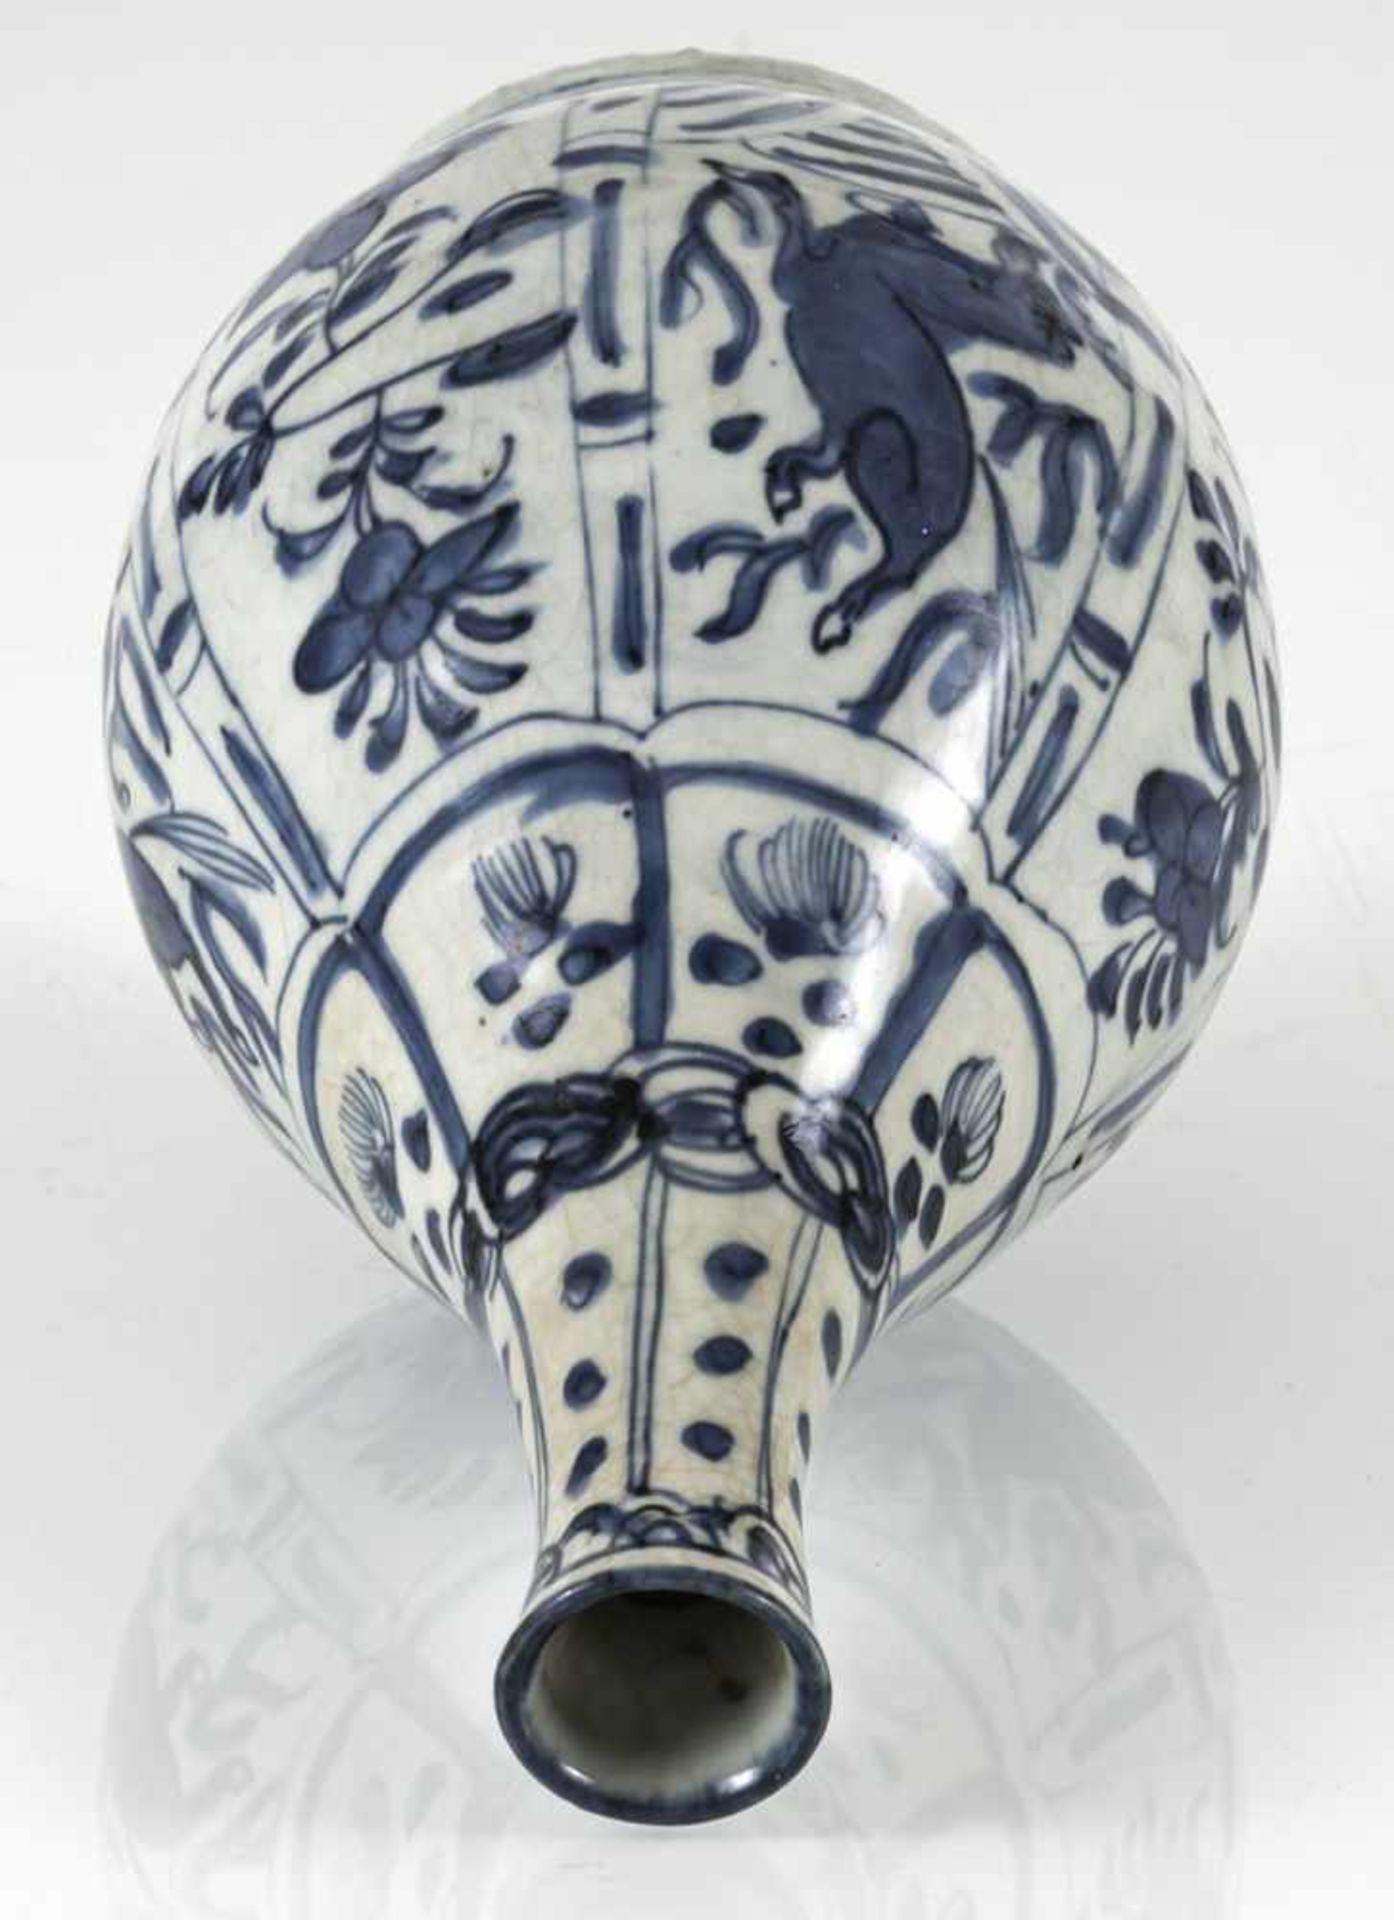 Unterglasurblau dekorierte Kraak-Flaschenvase mit Pferden und Blüten - Bild 3 aus 3